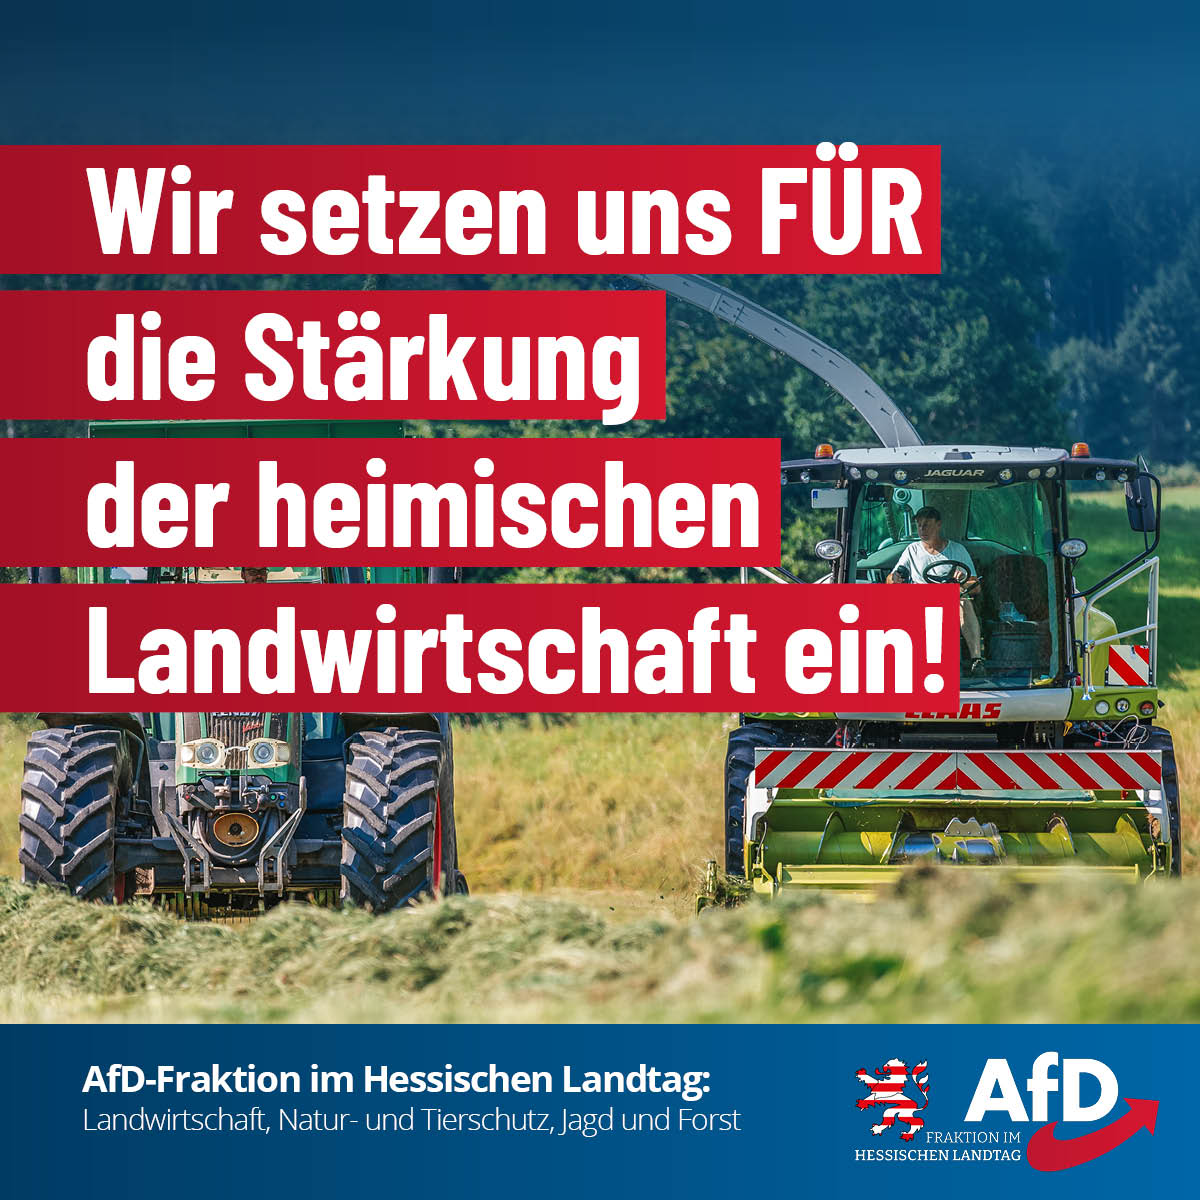 You are currently viewing AfD-Fraktion im Hessischen Landtag zu Landwirtschaft, Natur- und Tierschutz, Jagd und Forst